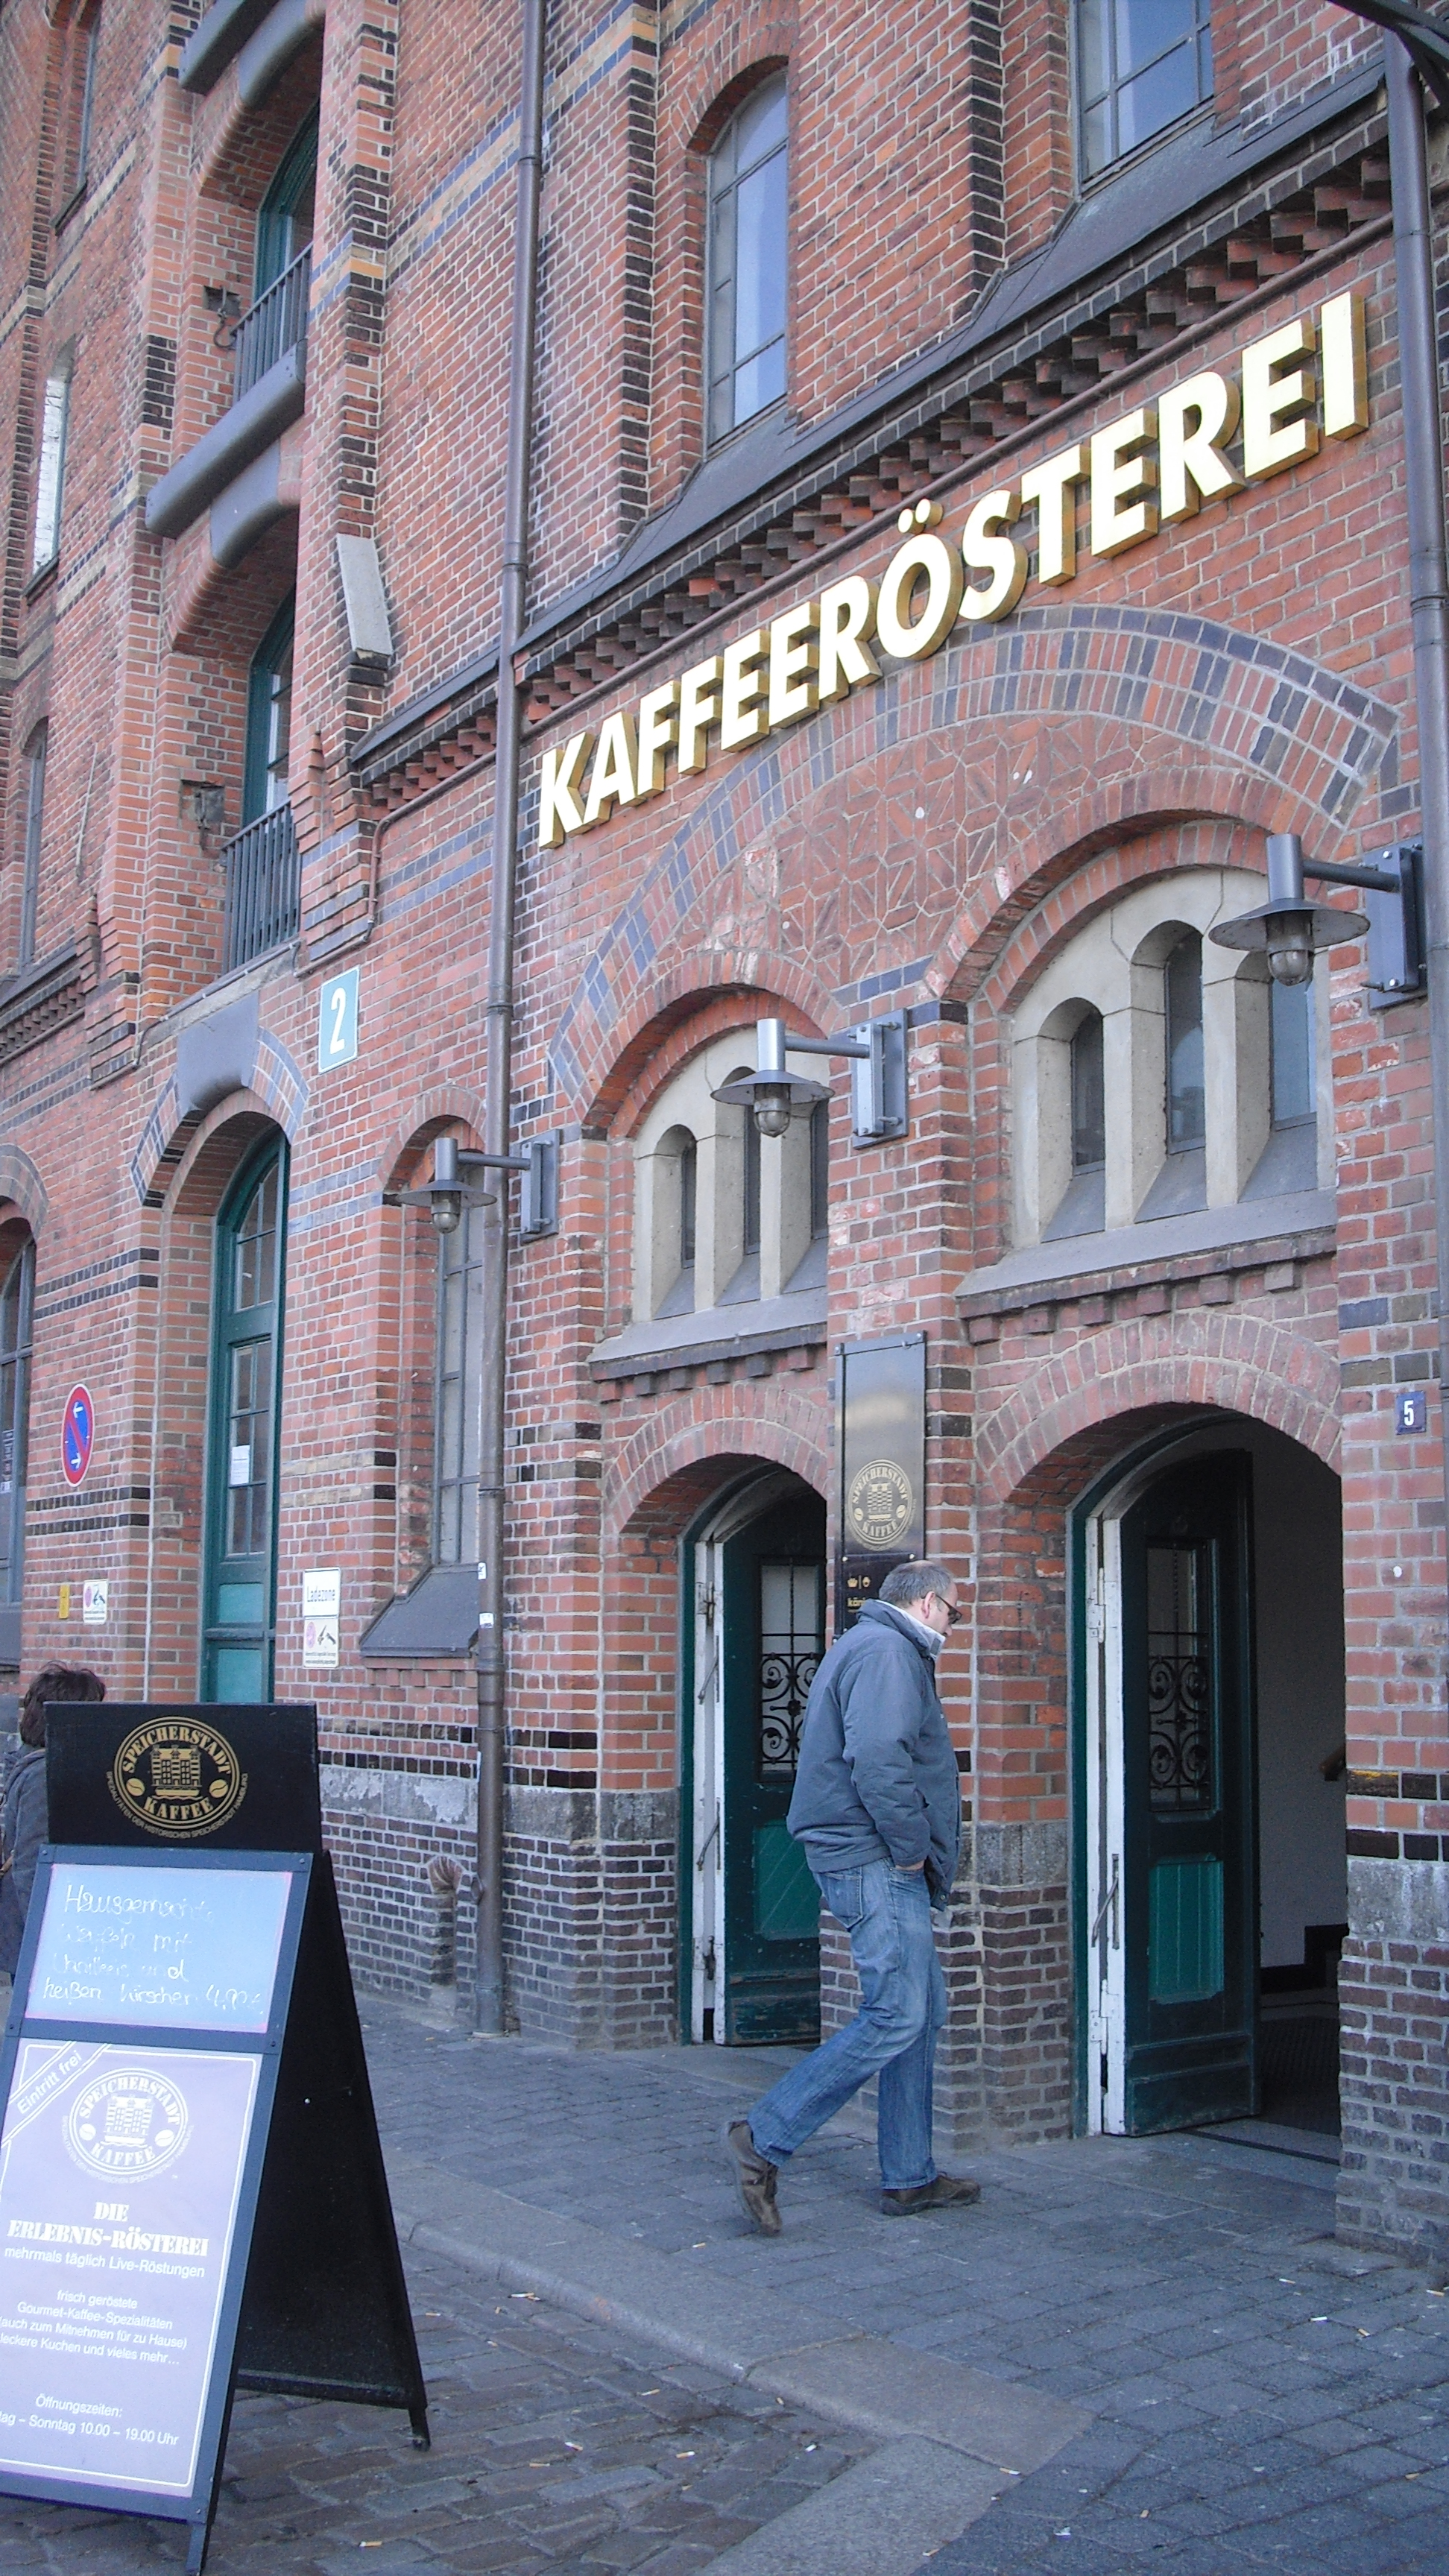 Bild 42 Speicherstadt Kaffeerösterei in Hamburg